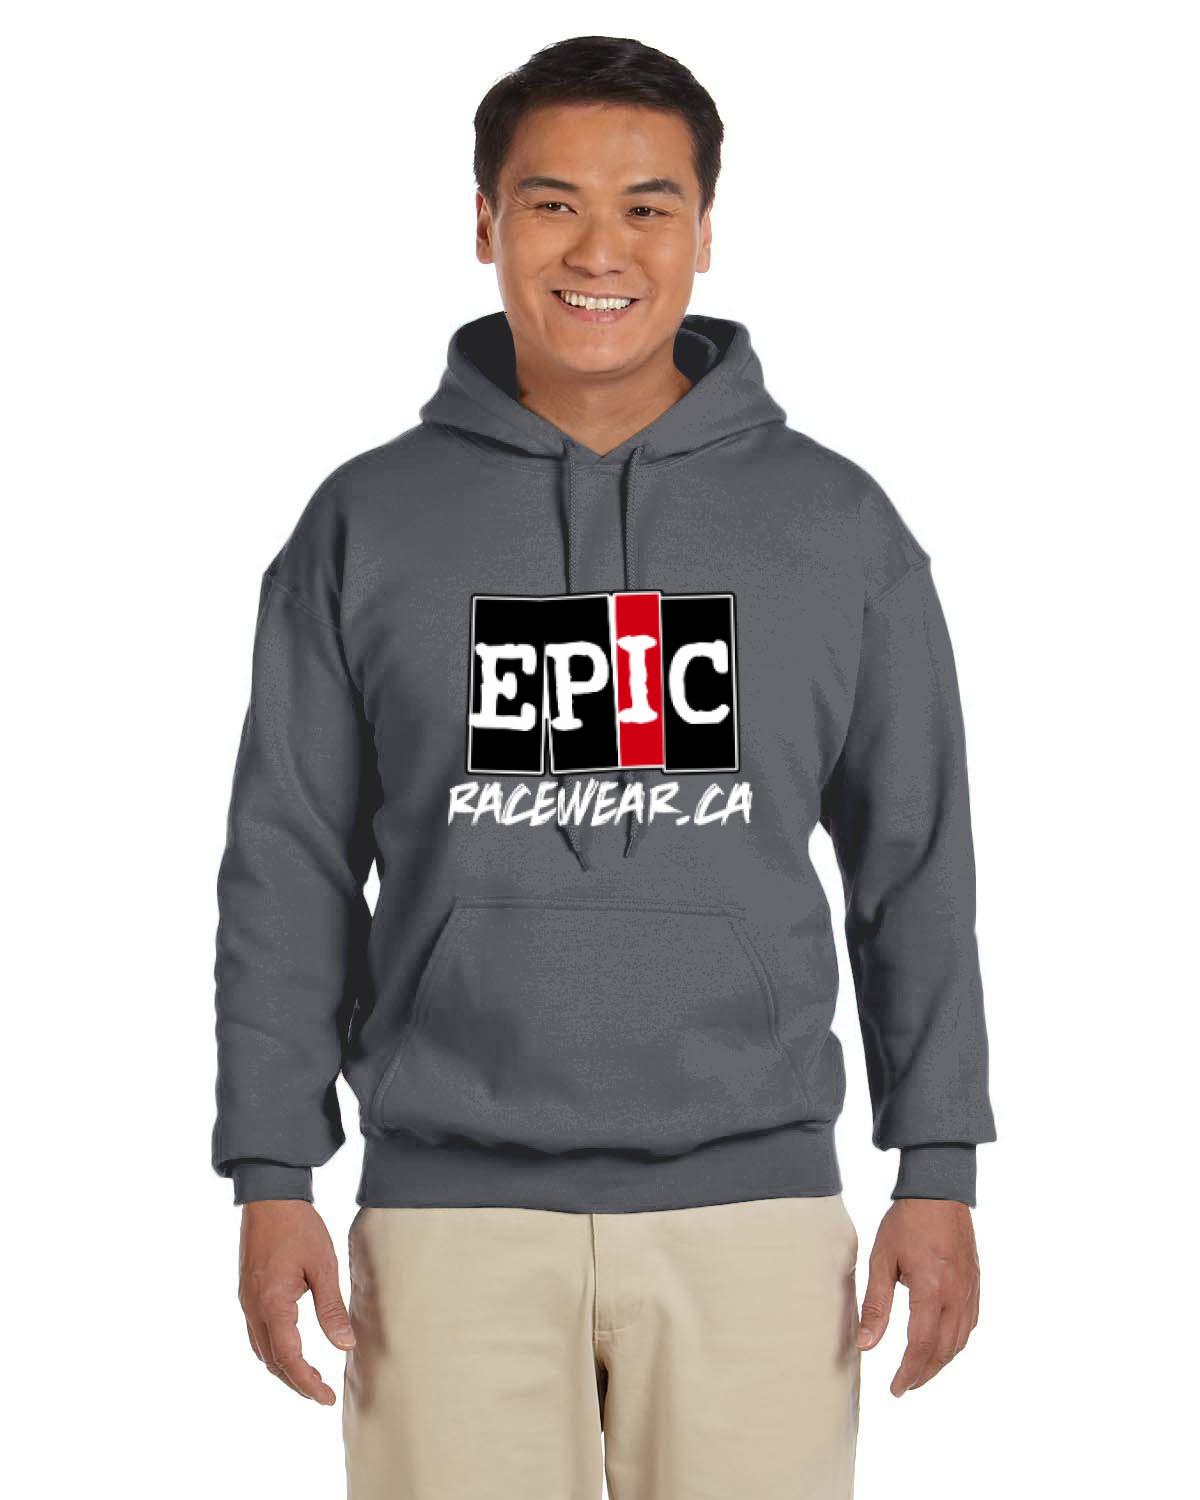 EPIC Racewear Hoodie